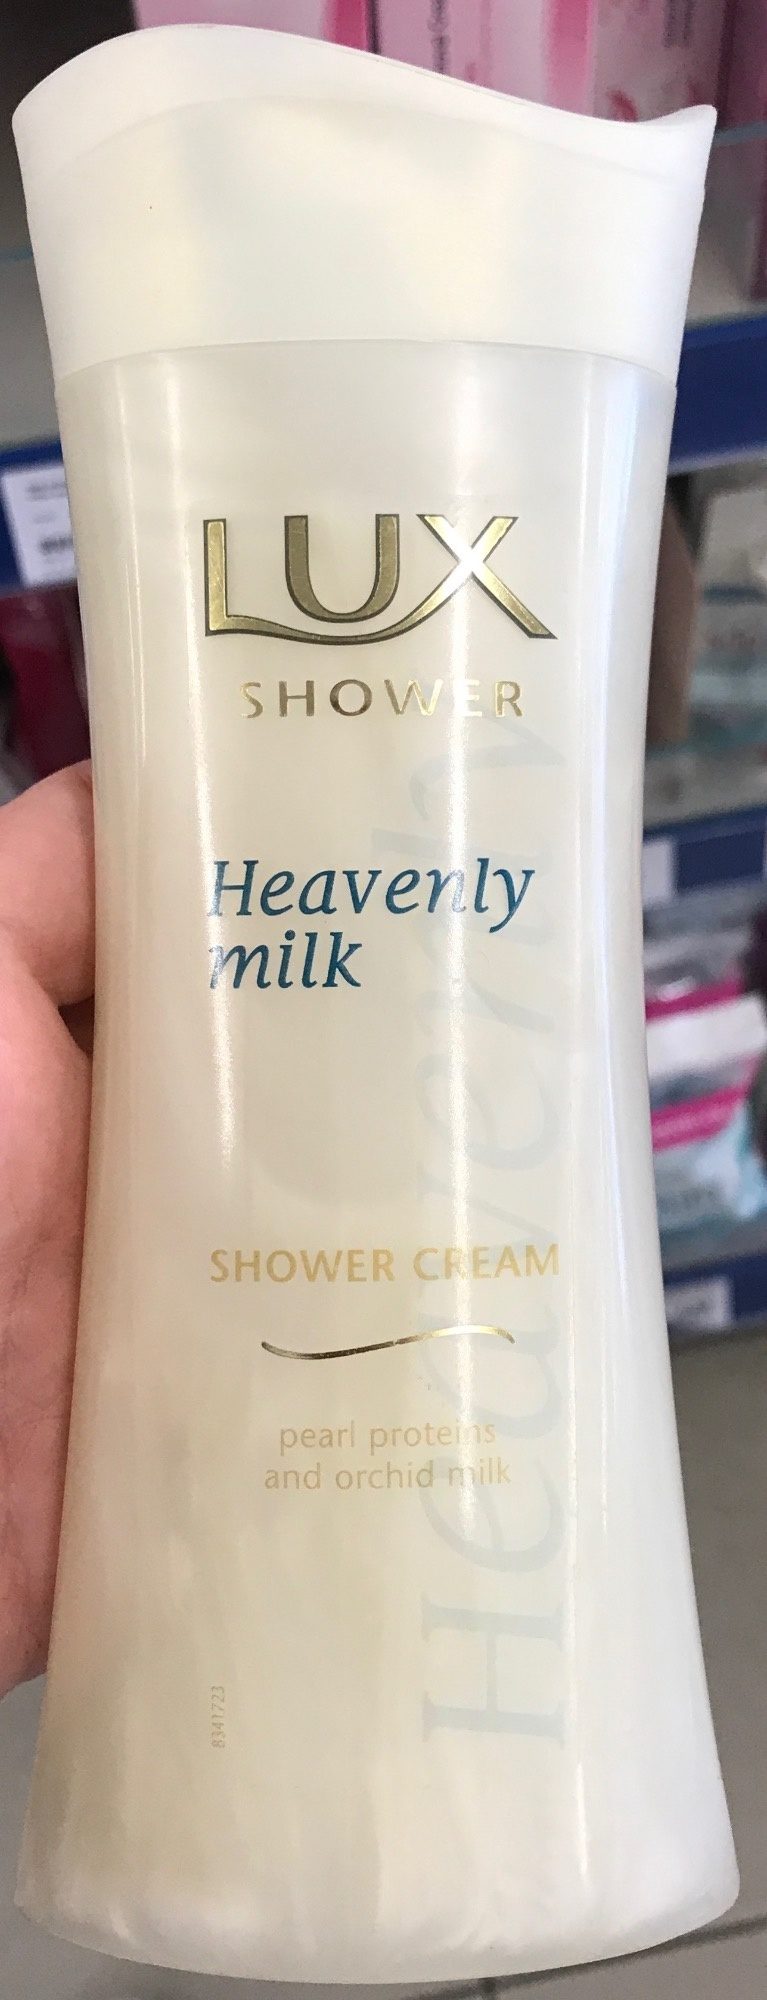 Heavenly Milk Shower Cream - Product - en